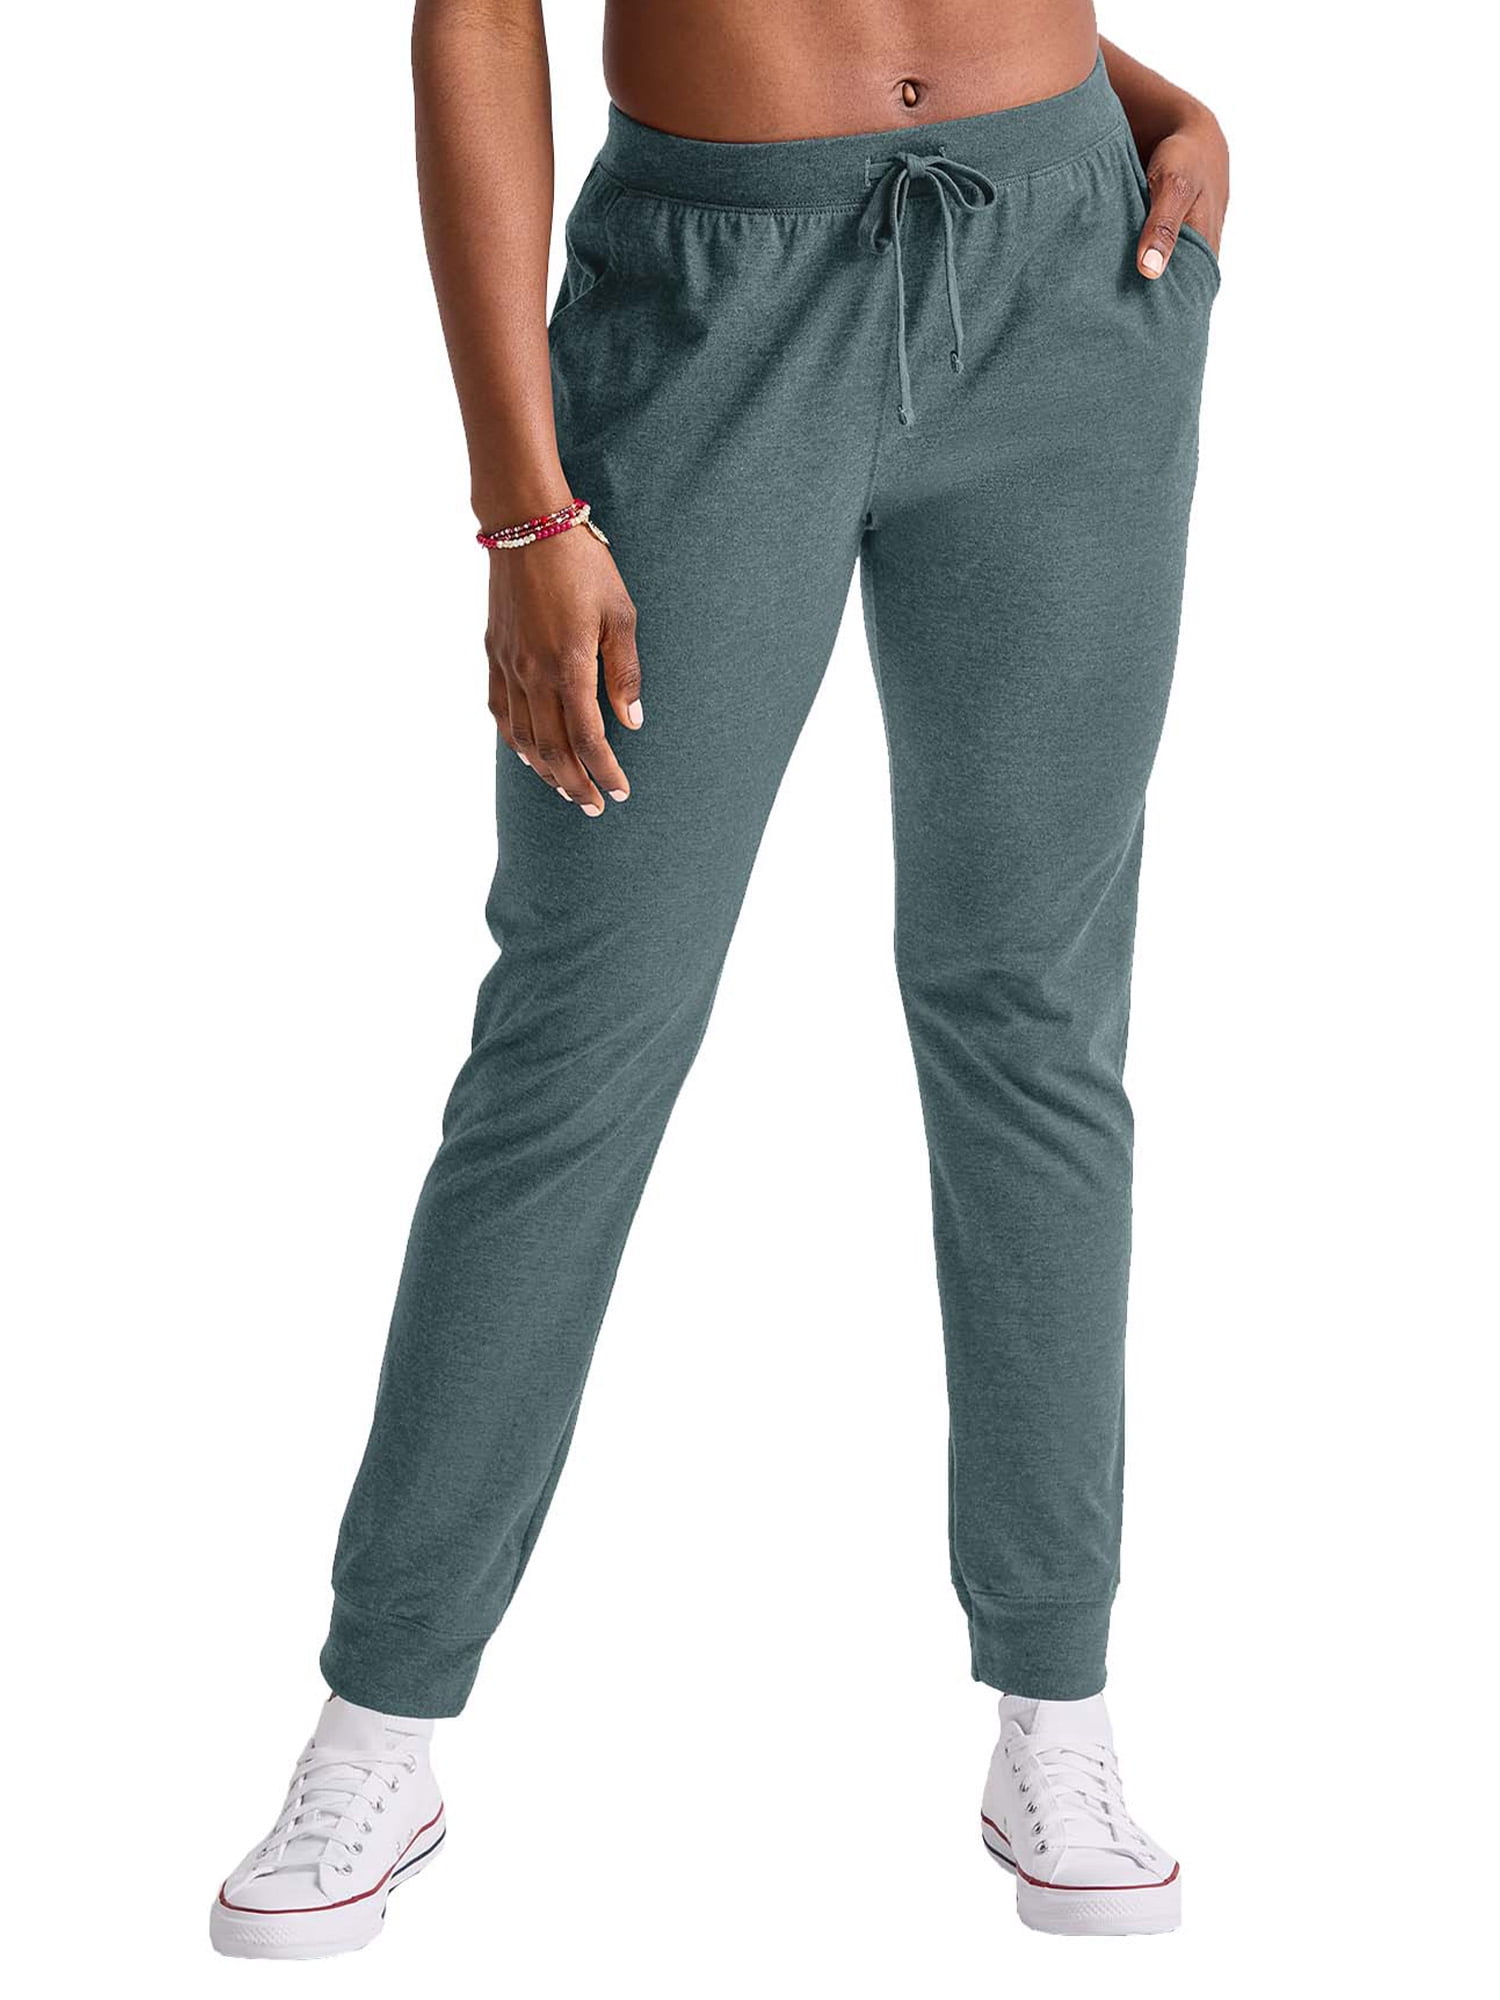 Hanes Originals Women's Tri-Blend Jogger Sweatpants with Pockets 